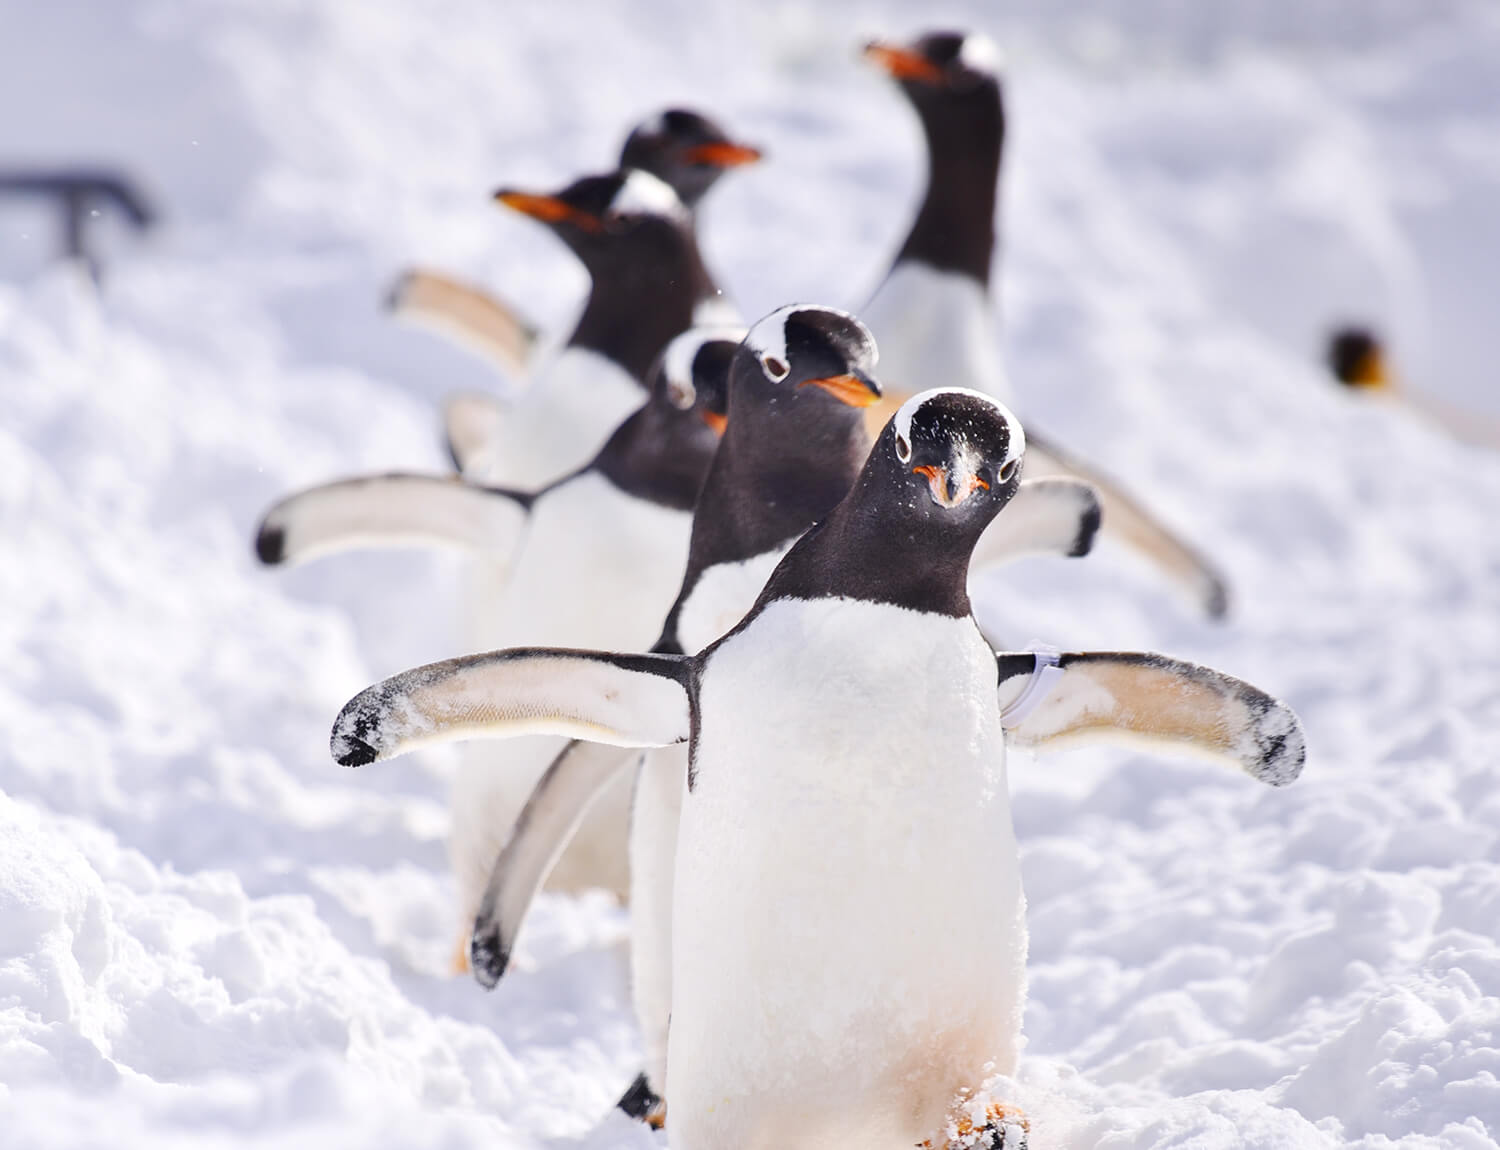 雪原をよちよち歩き回るジェンツーペンギンの姿は、動画に収めたくなる愛らしさ